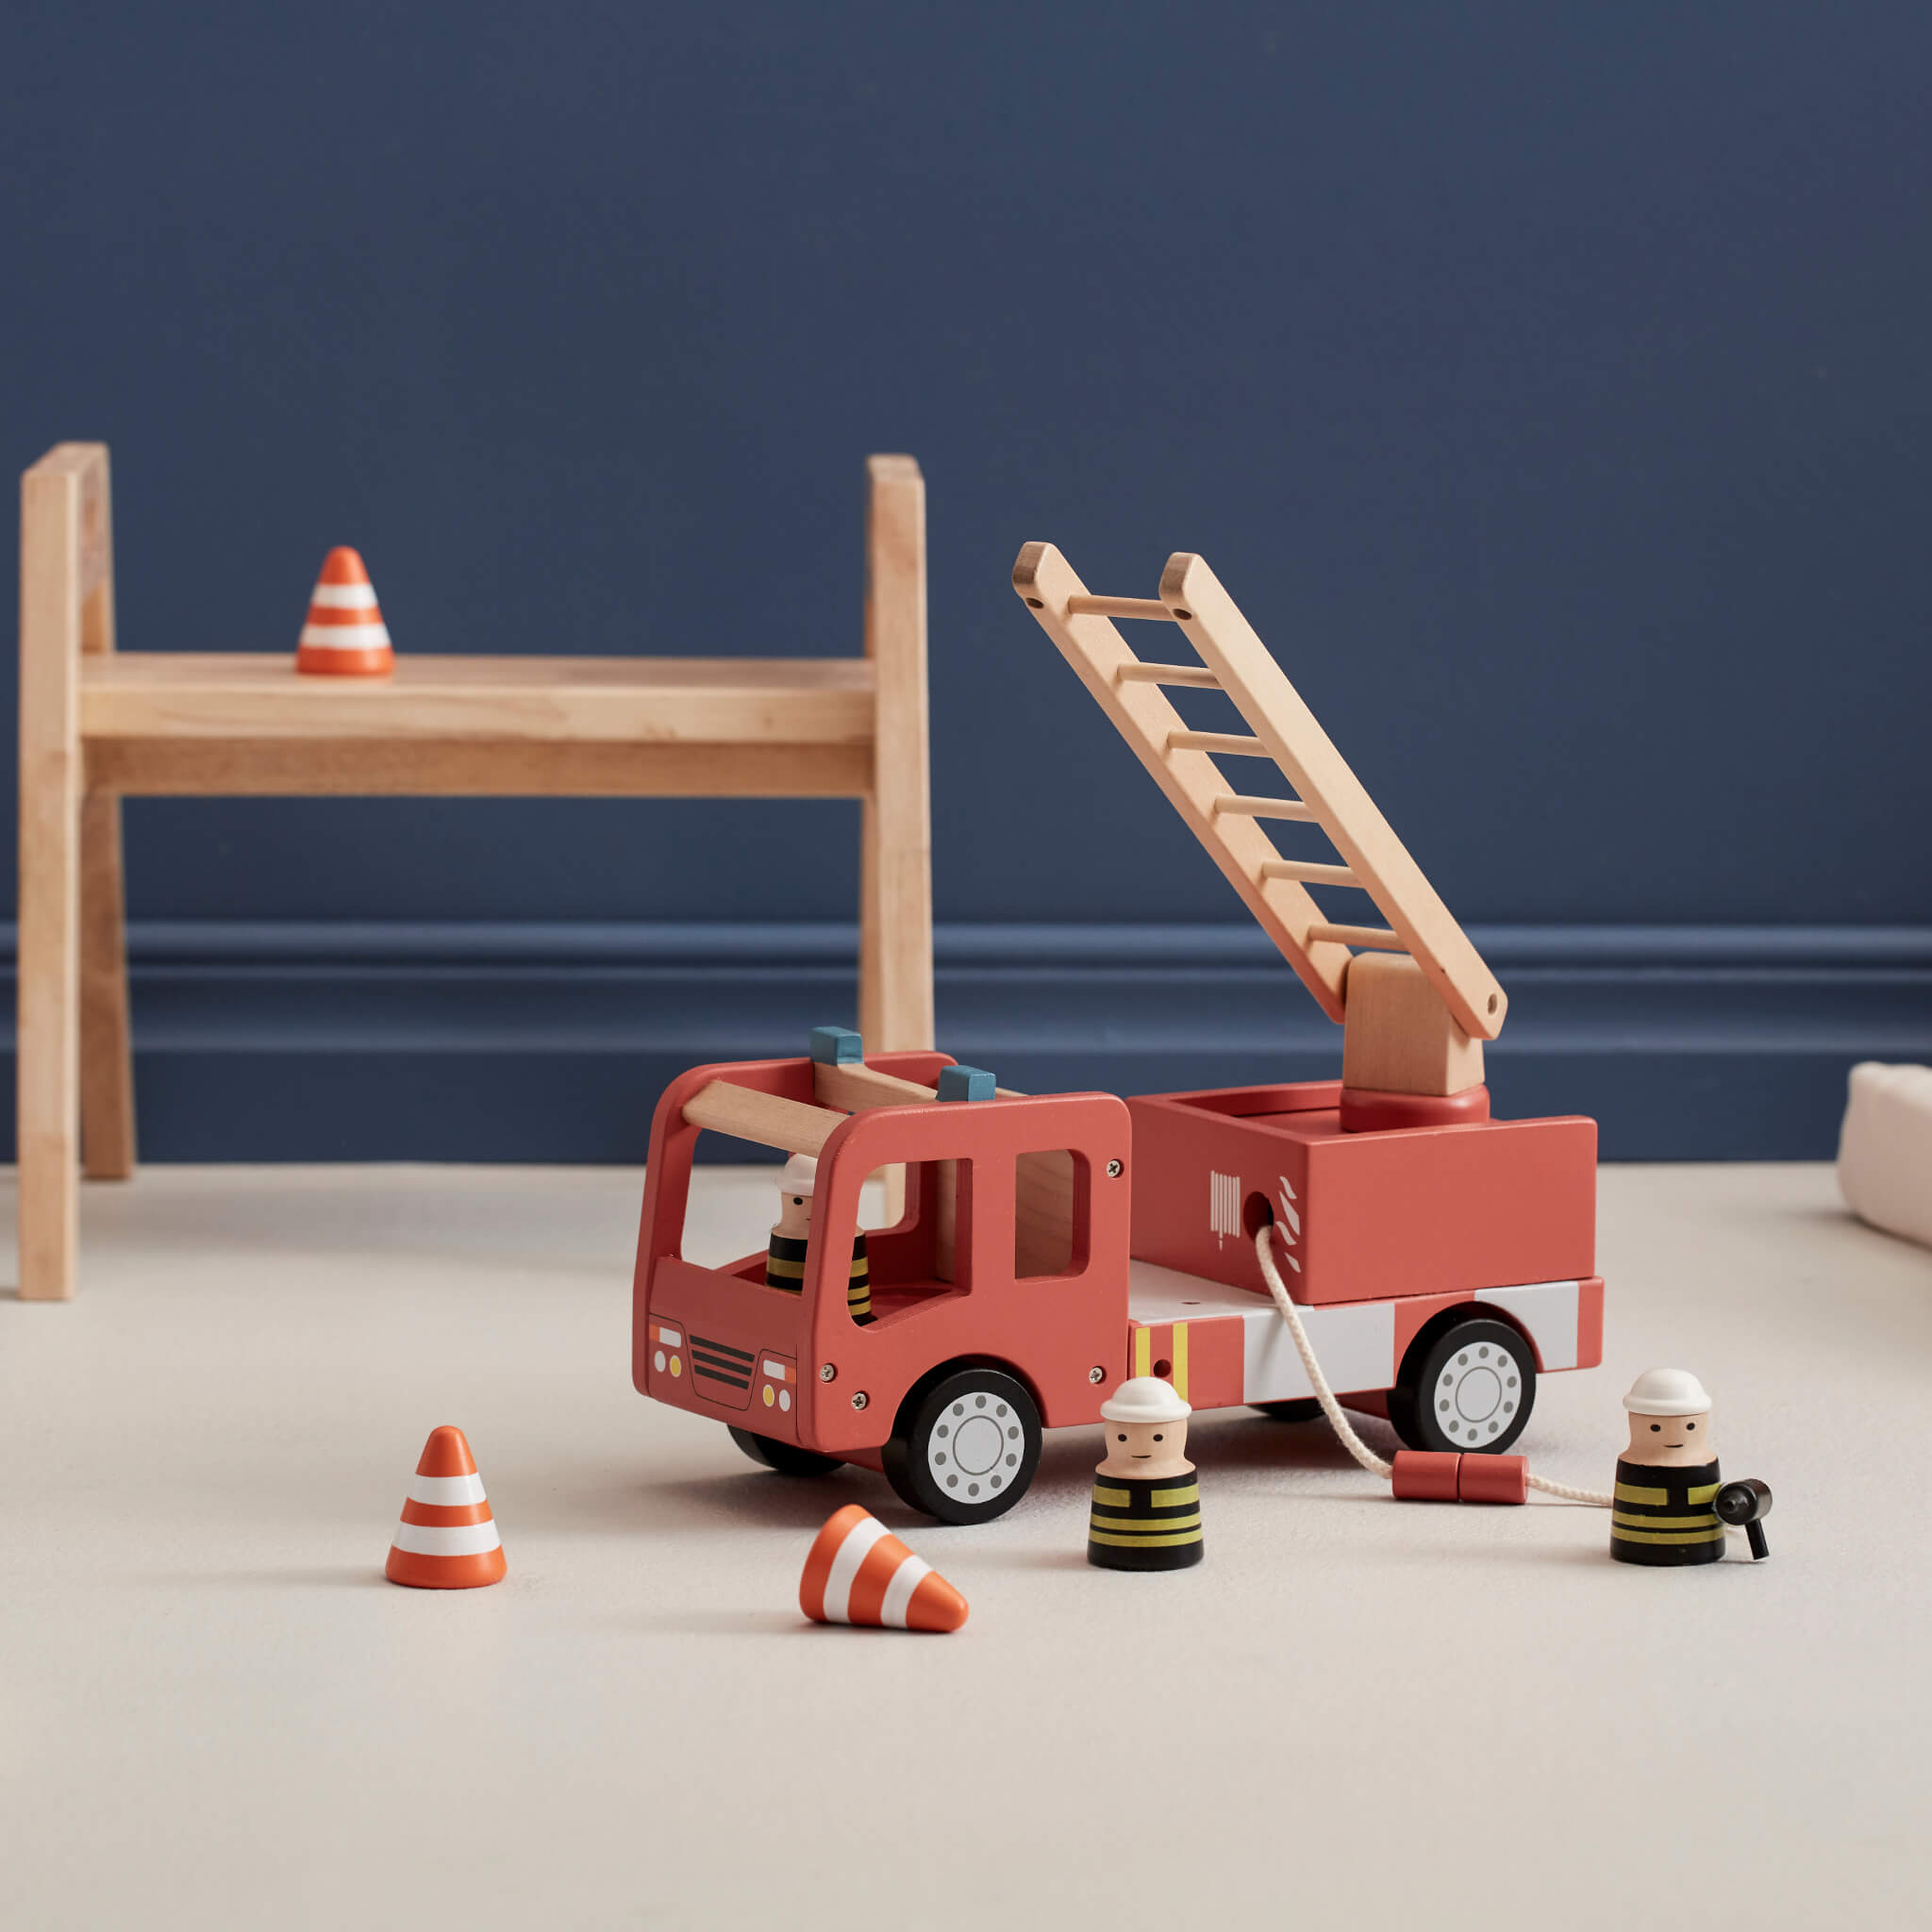 Kids Concept Wooden Fire Truck